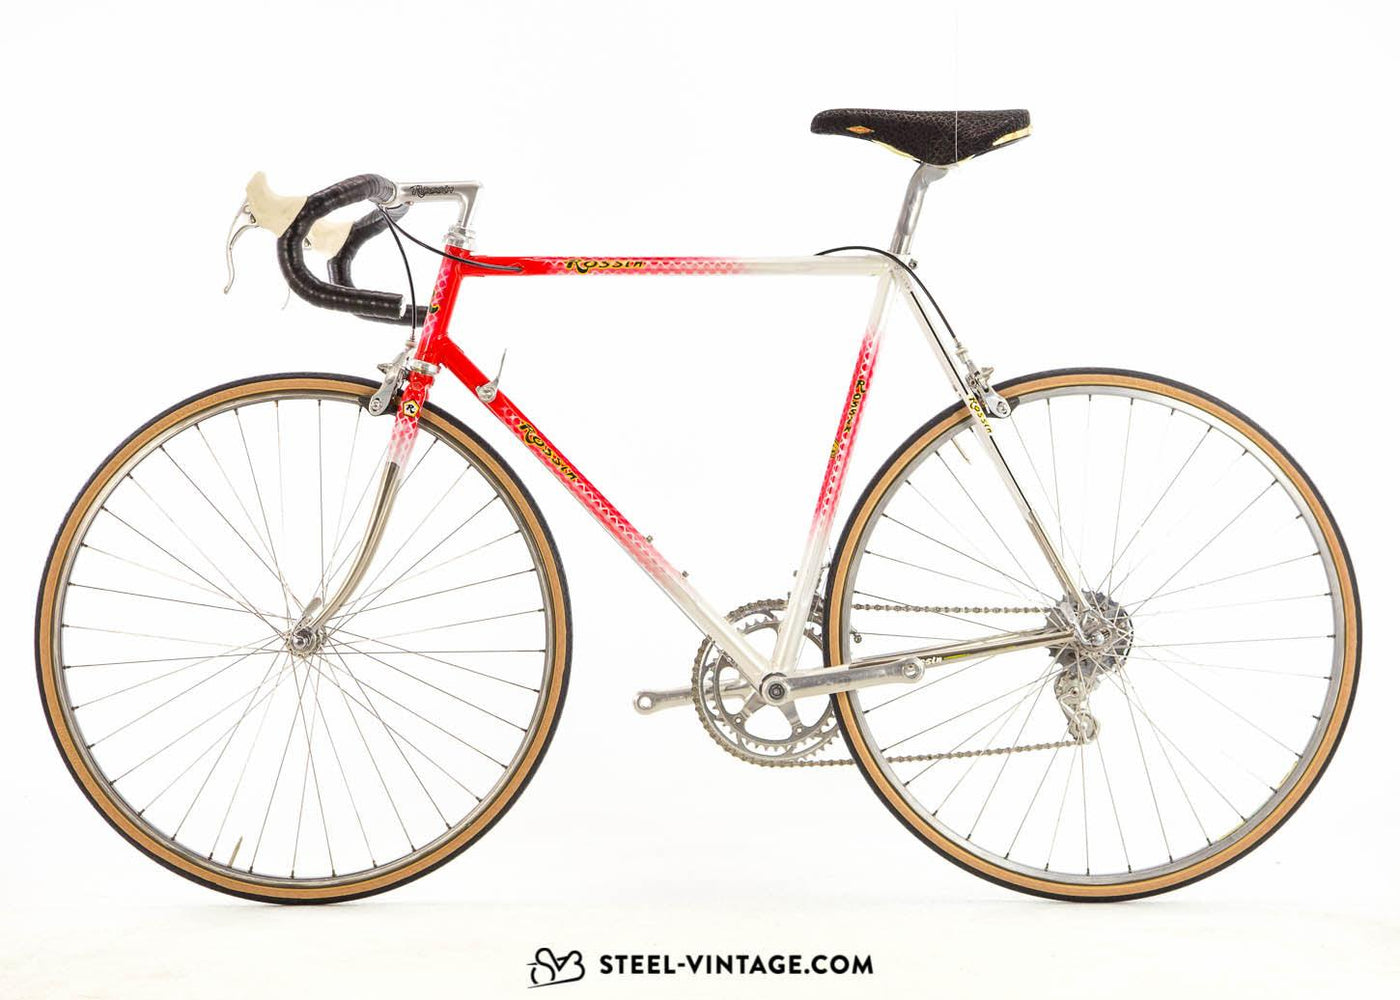 Rossin Ghibli Classic Road Bike 1980s - Steel Vintage Bikes